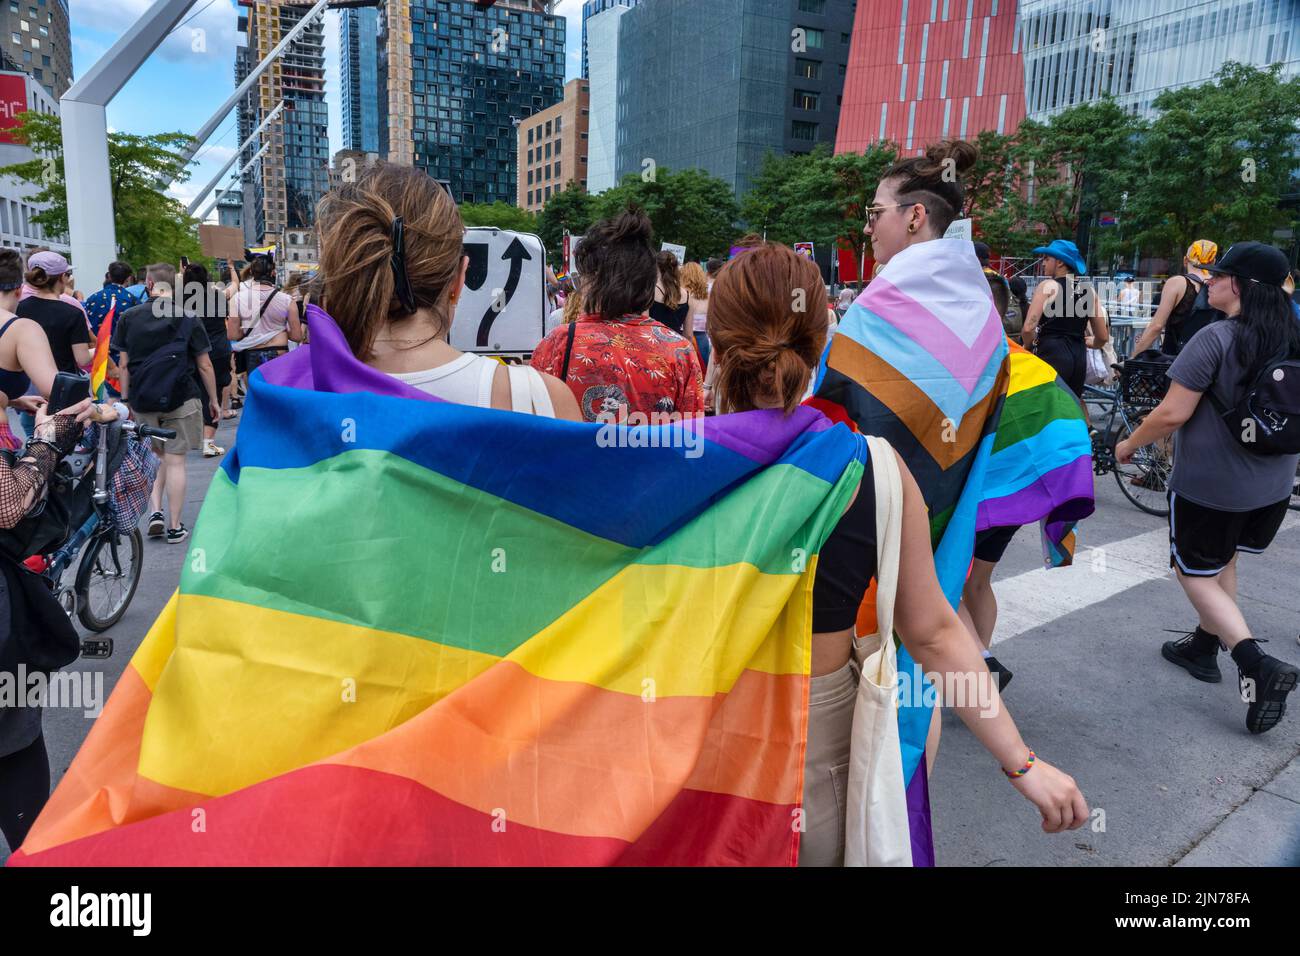 Montreal, CA - 7 de agosto de 2022: Muchas personas participan en la marcha espontánea del orgullo gay después de que el desfile oficial del orgullo fuera cancelado Foto de stock